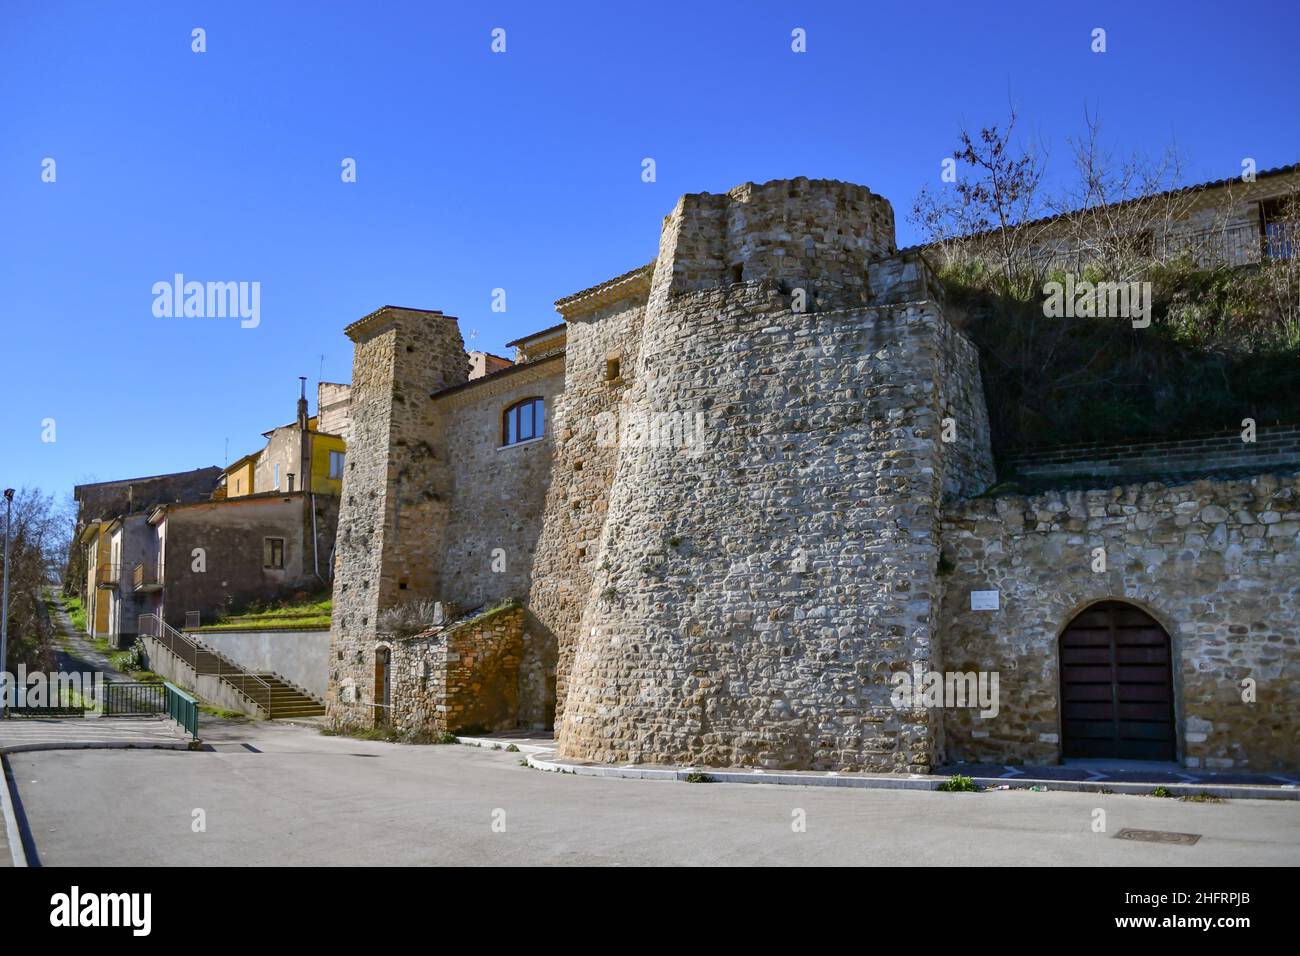 Porte d'entrée dans les murs fortifiés de Montecalvo Irpino, un village médiéval dans les montagnes de la province d'Avellino, Italie. Banque D'Images